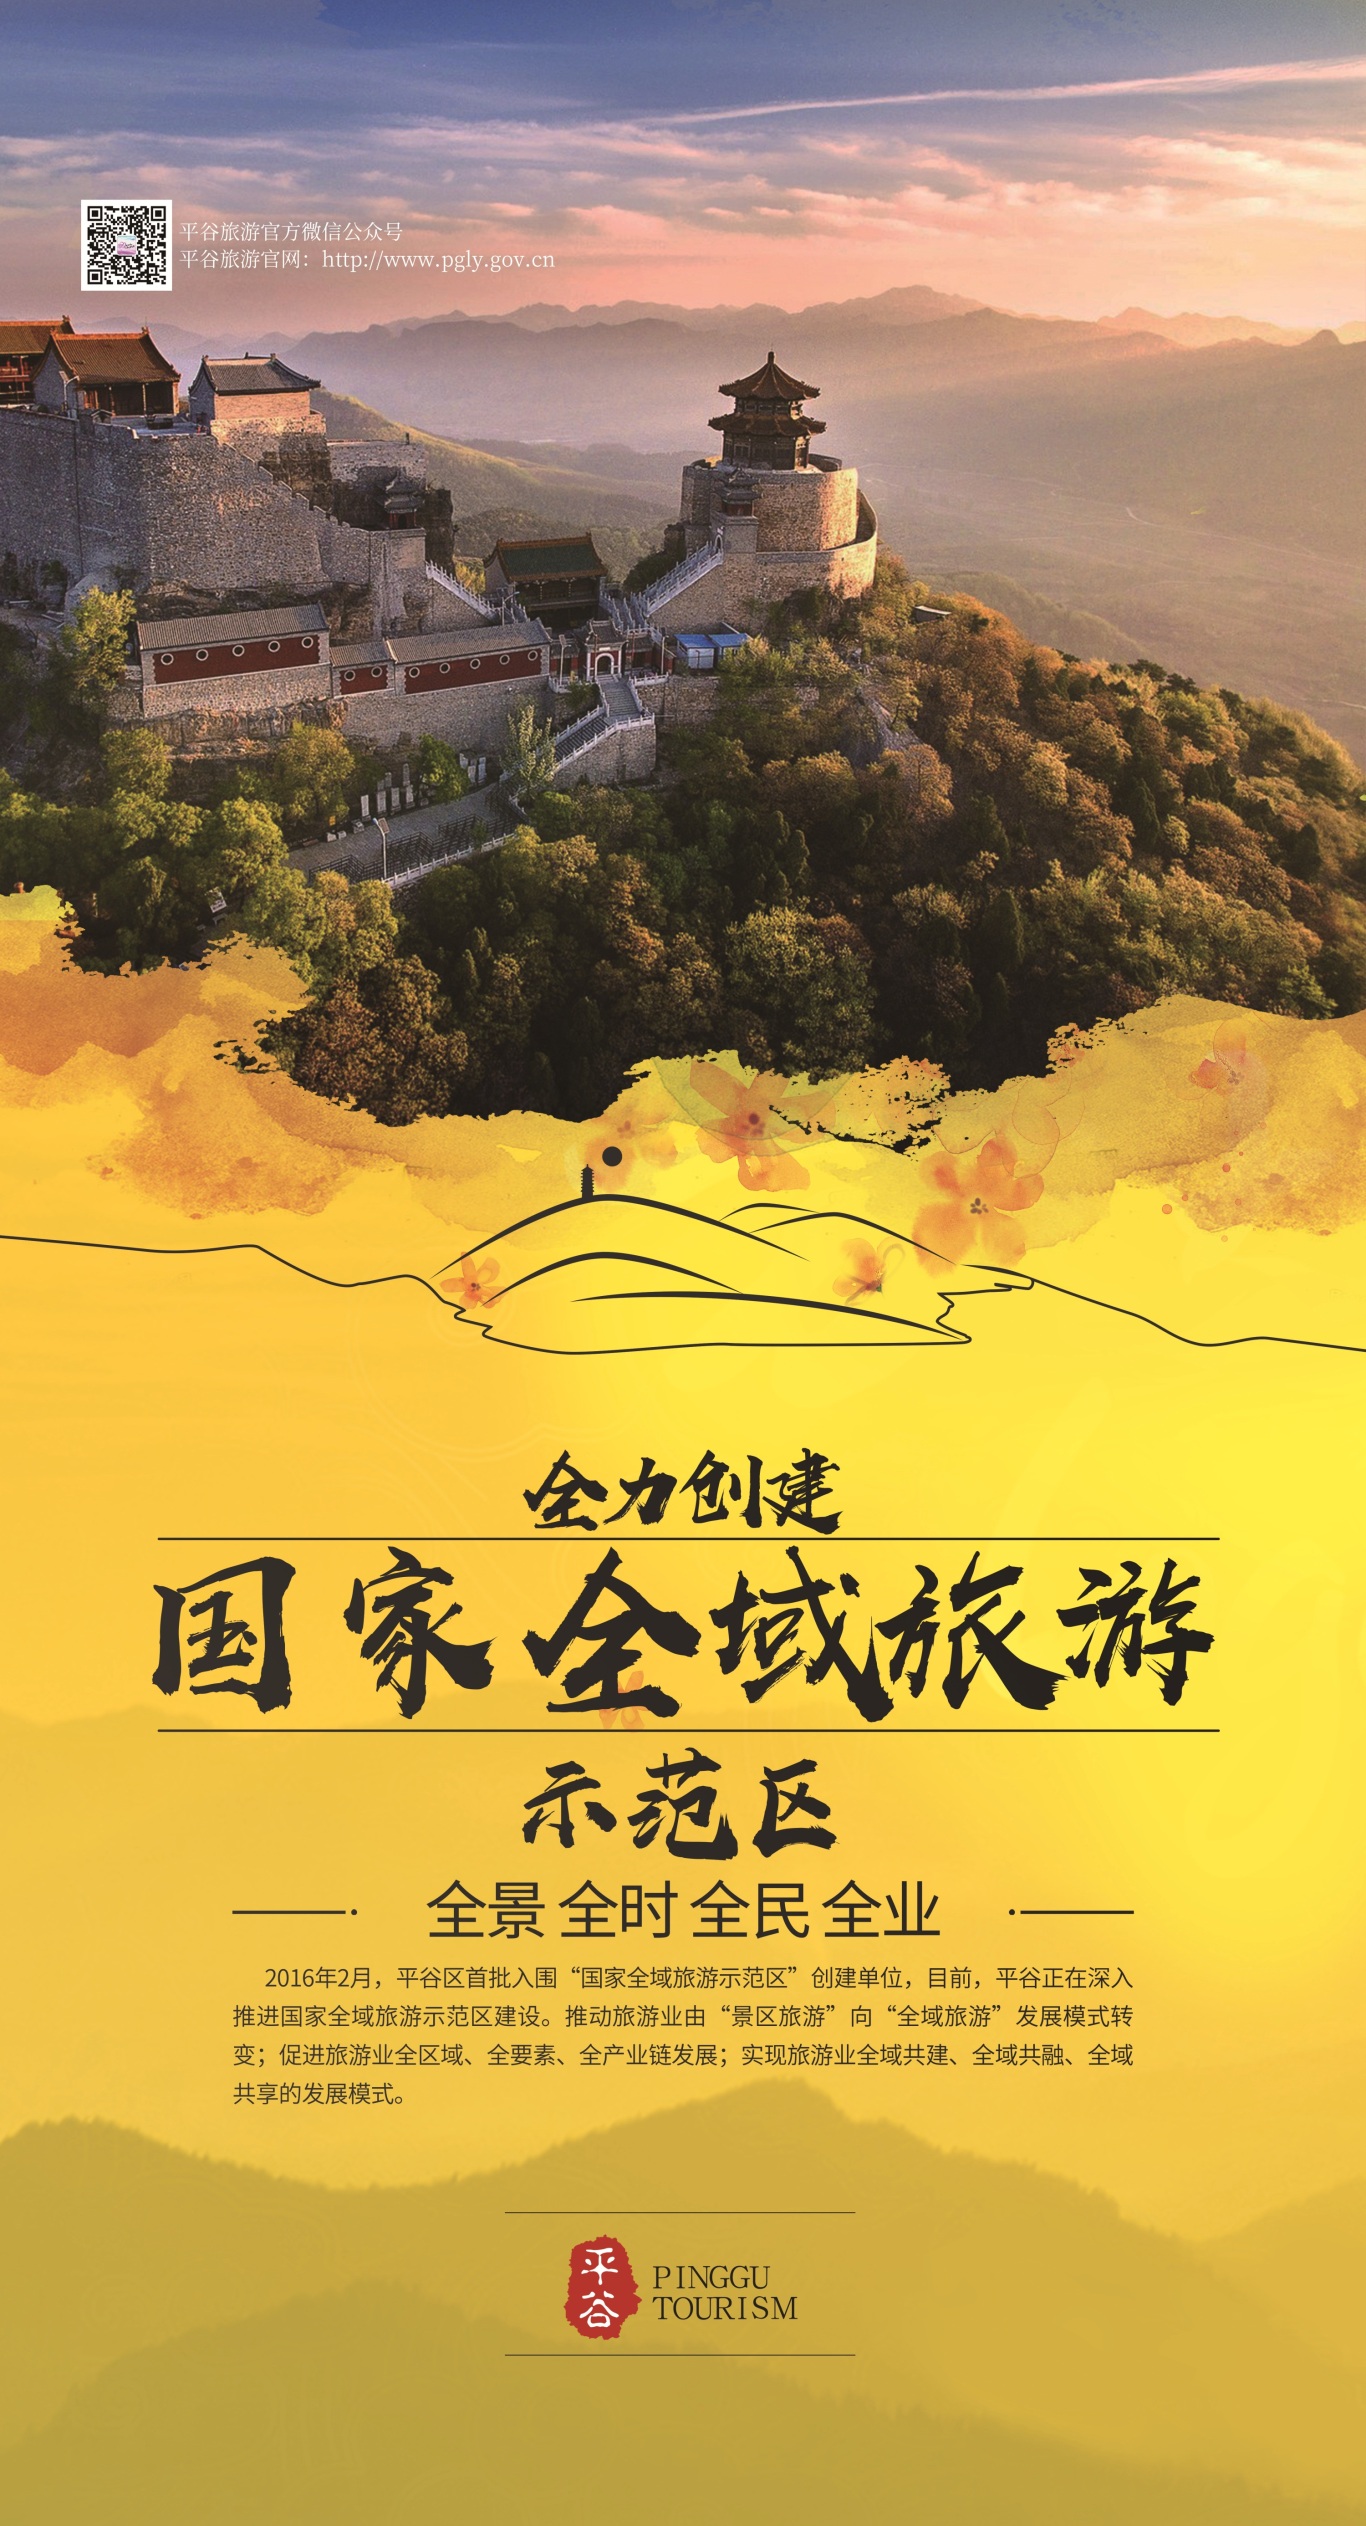 北京平谷区旅游委对外宣传海报图4